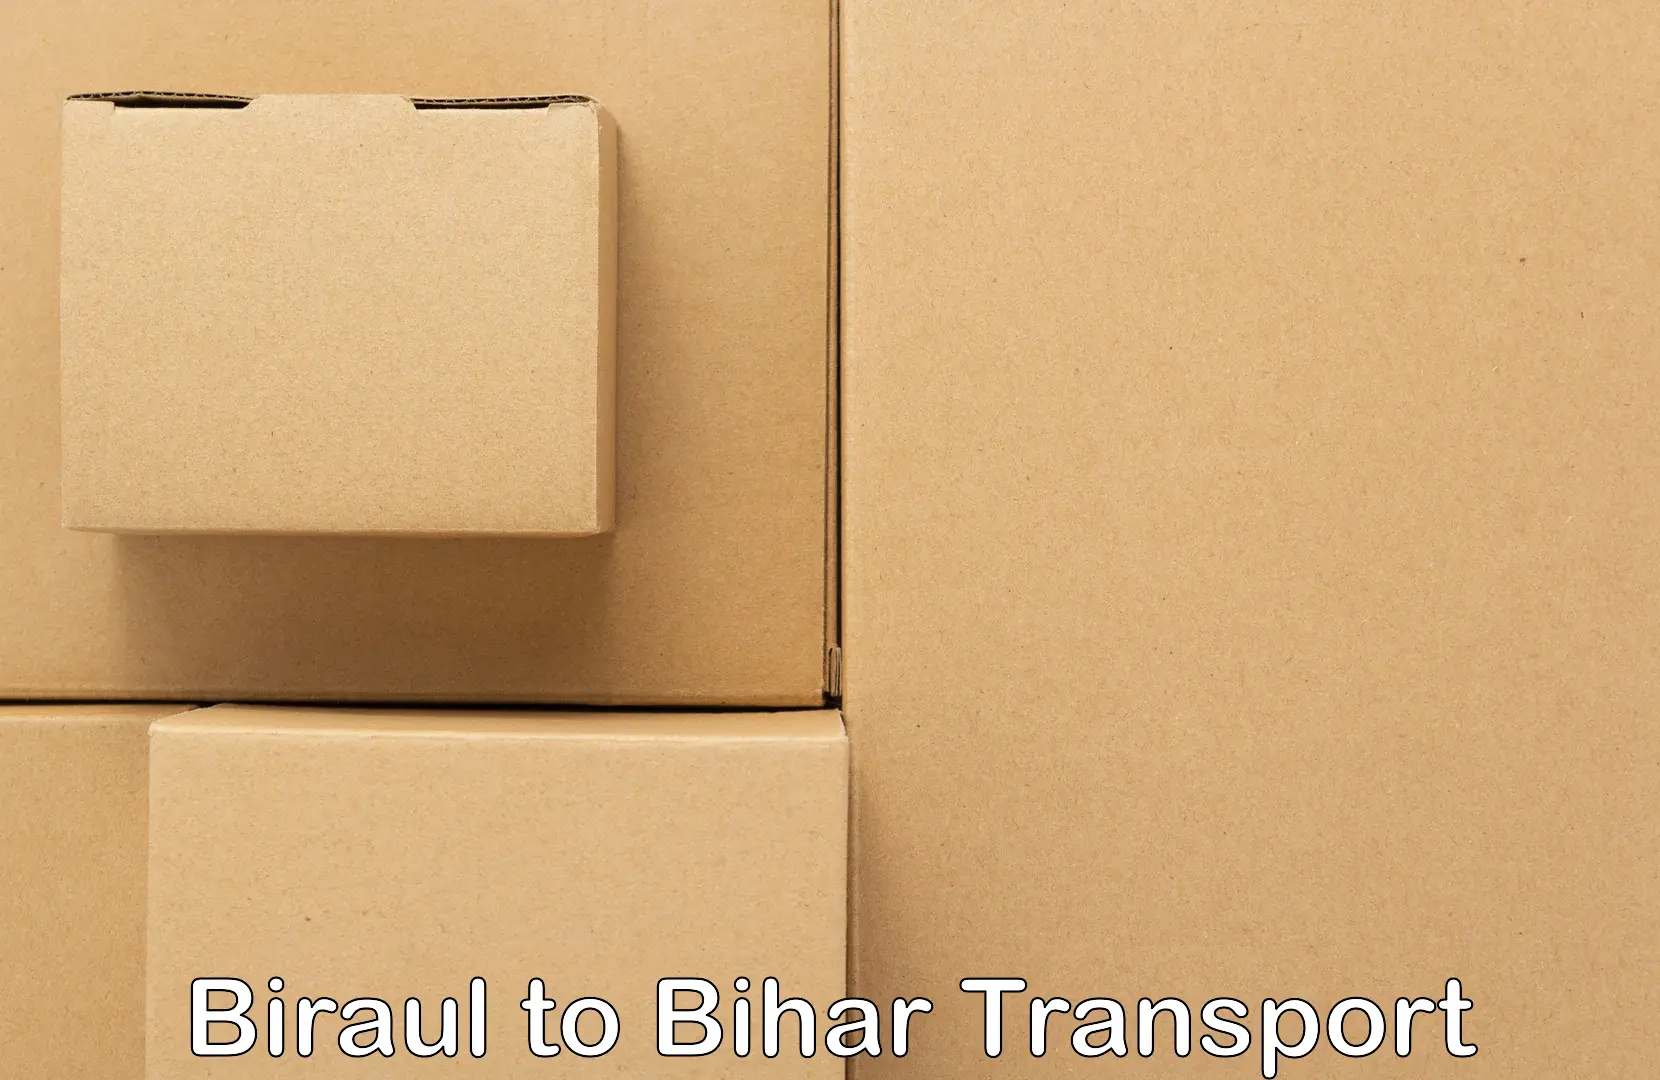 Shipping partner Biraul to Danapur